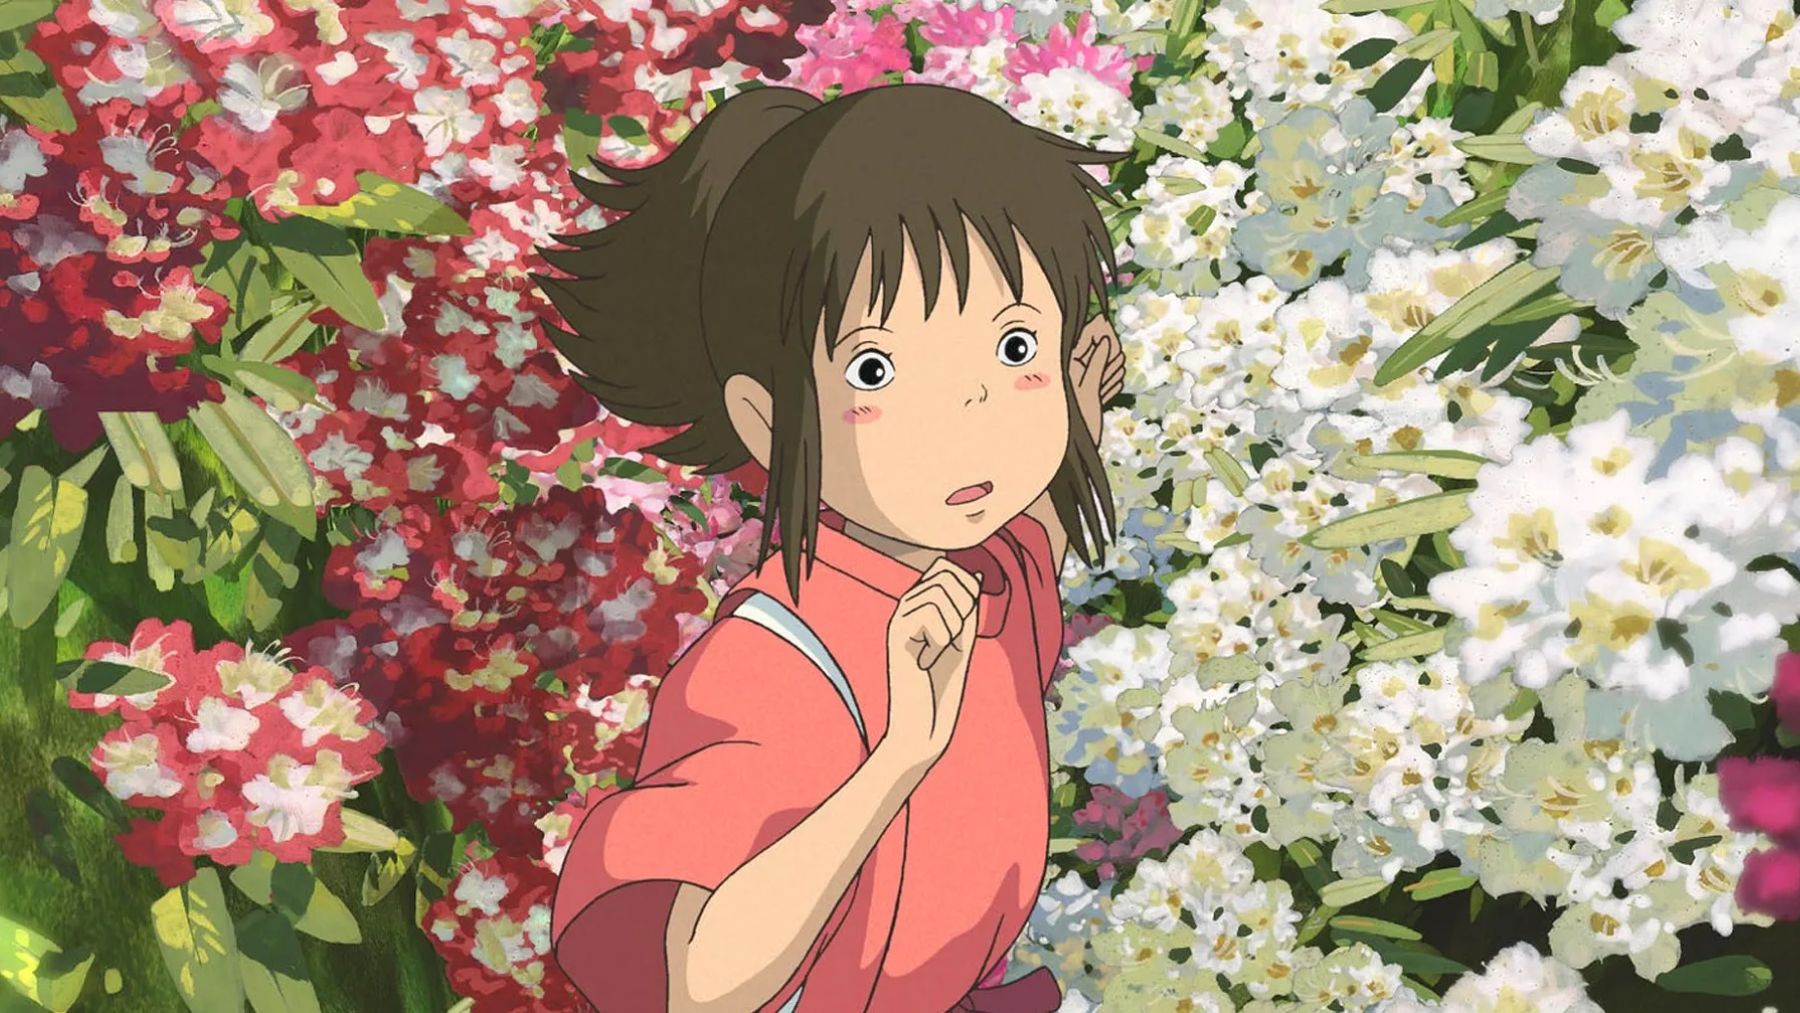 Descubre qué ha pasado con estudio Ghibli y algunas de sus curiosidades